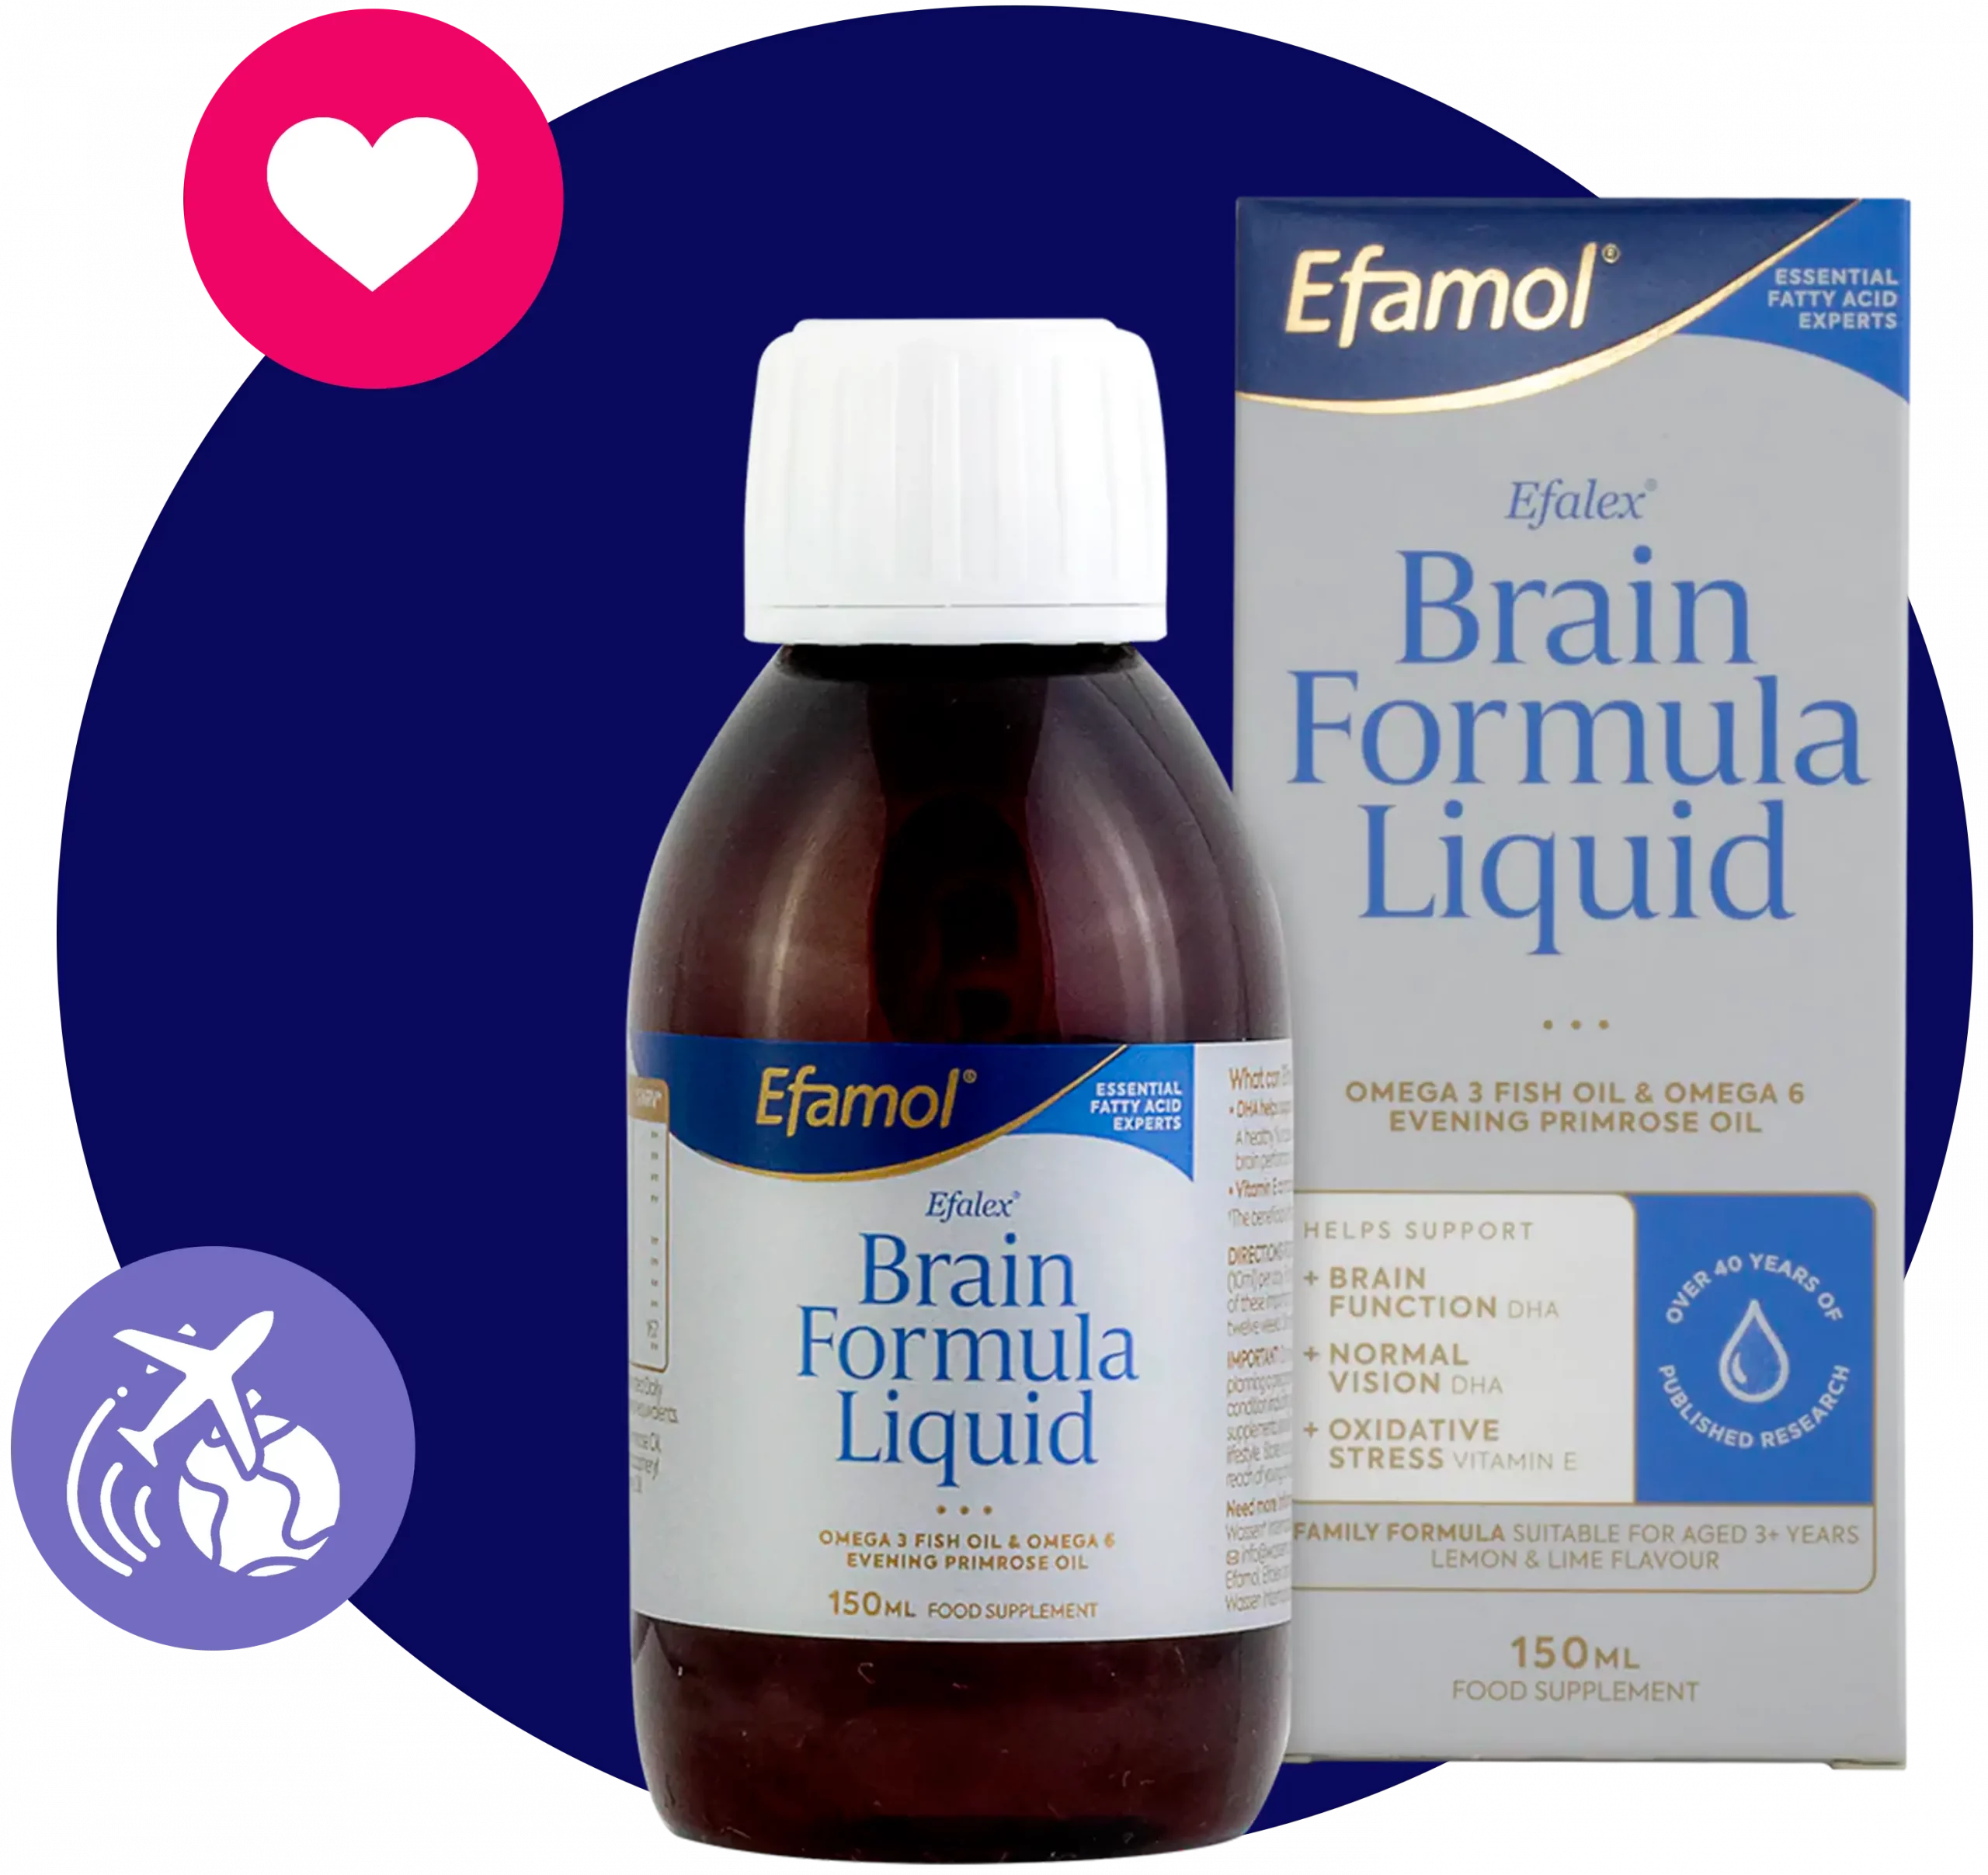  Efamol - Efalex Brain Formula Liquid